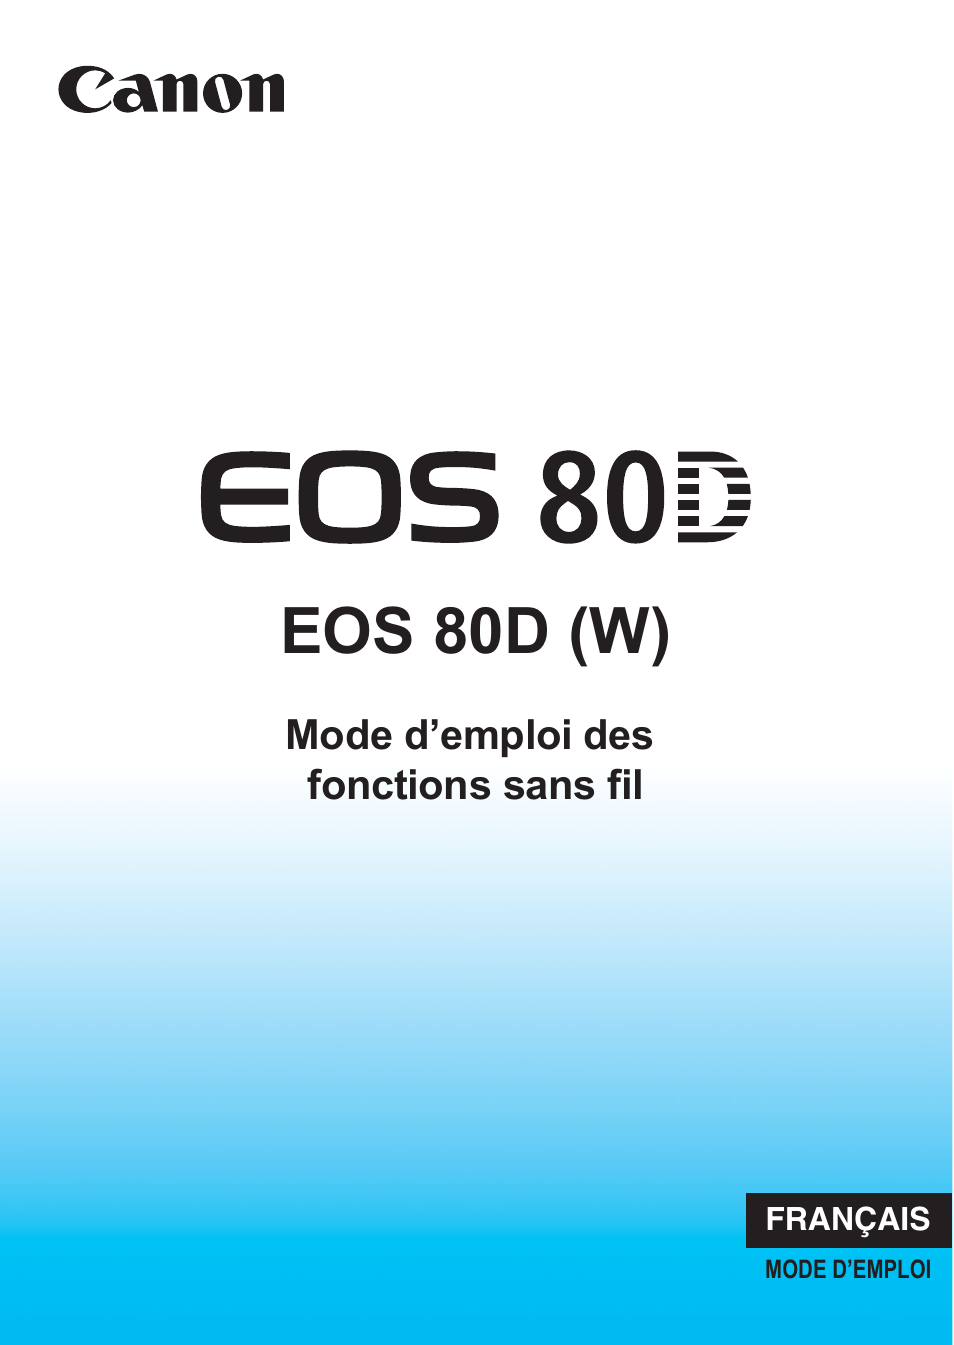 Canon EOS 80D Manuel d'utilisation | Pages: 174